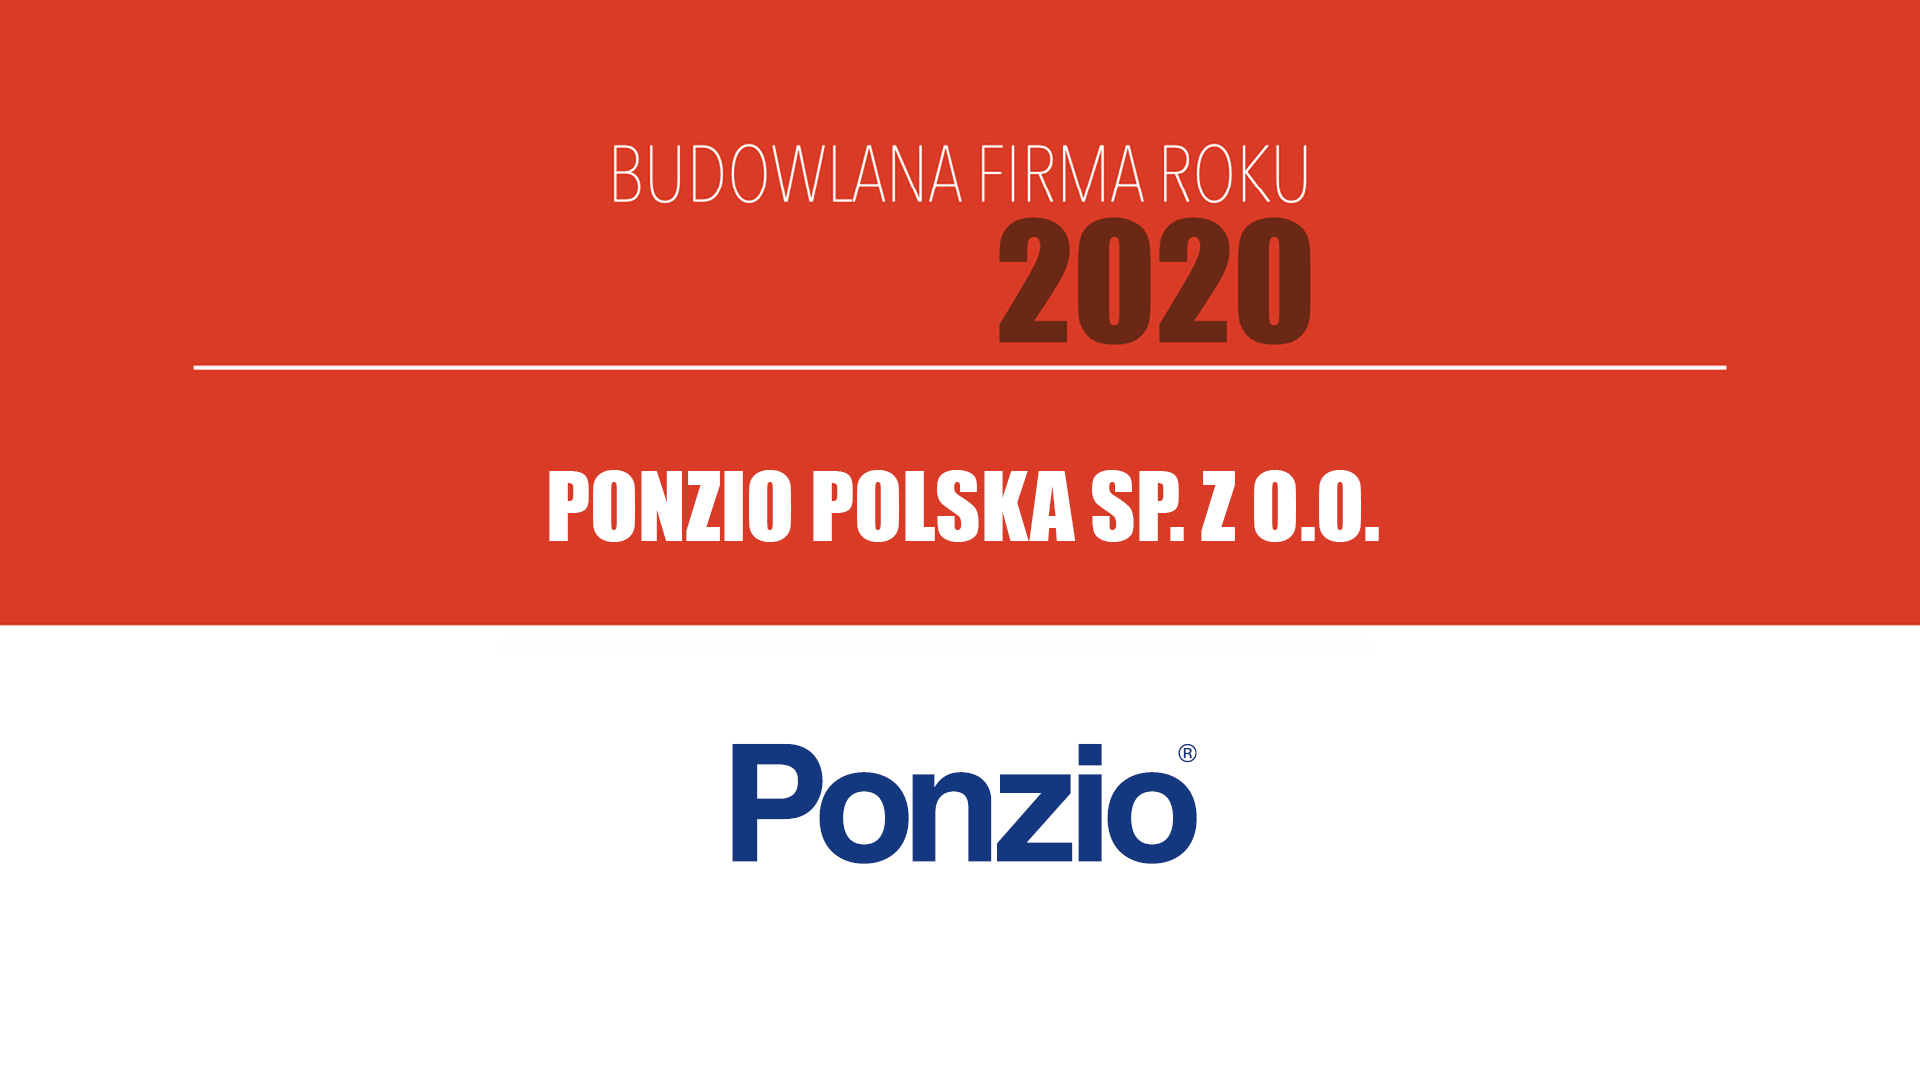 PONZIO POLSKA SP. Z O.O. – Budowlana Firma Roku 2020